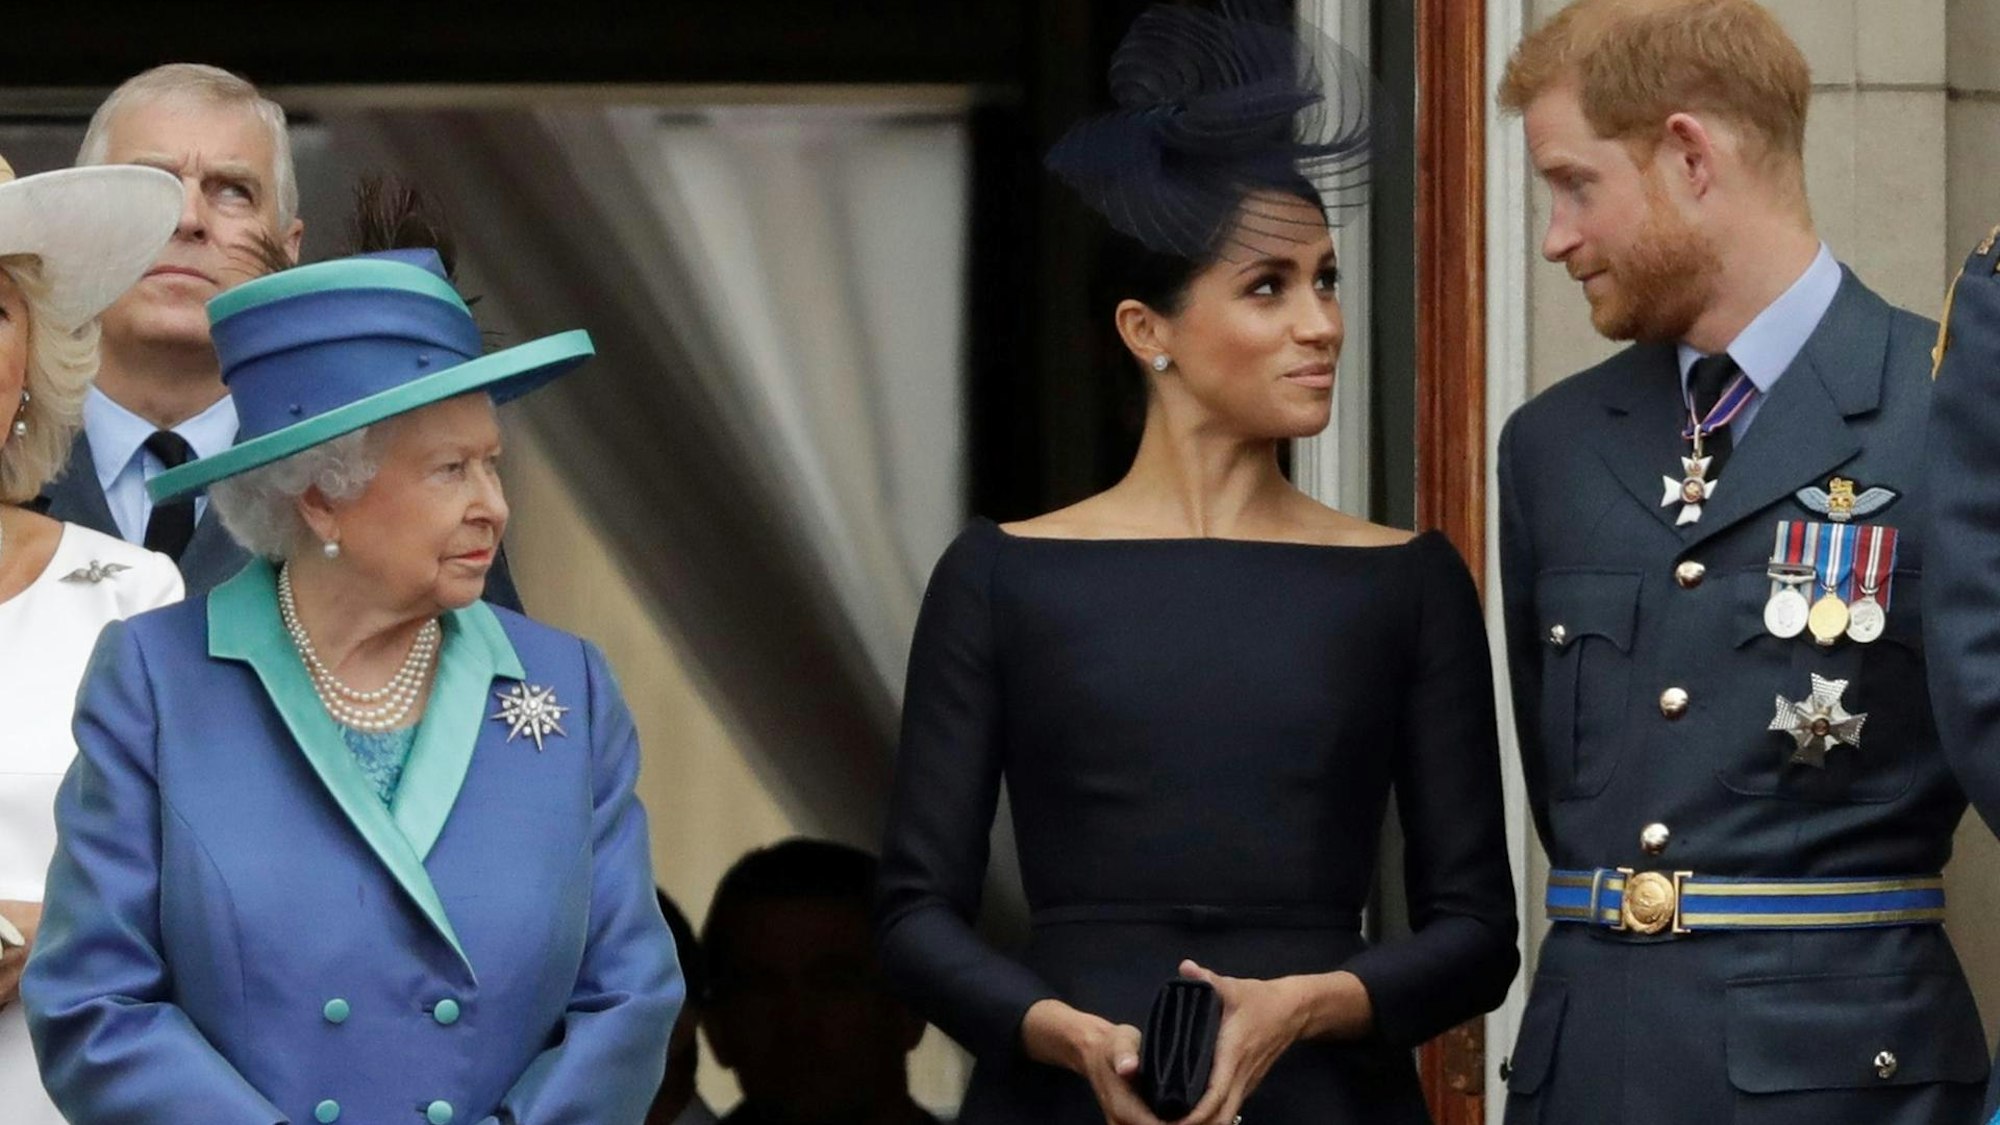 Königin Elizabeth II., Meghan und Harry bei einem offiziellen Anlass auf dem Balkon vom Buckingham Palace.